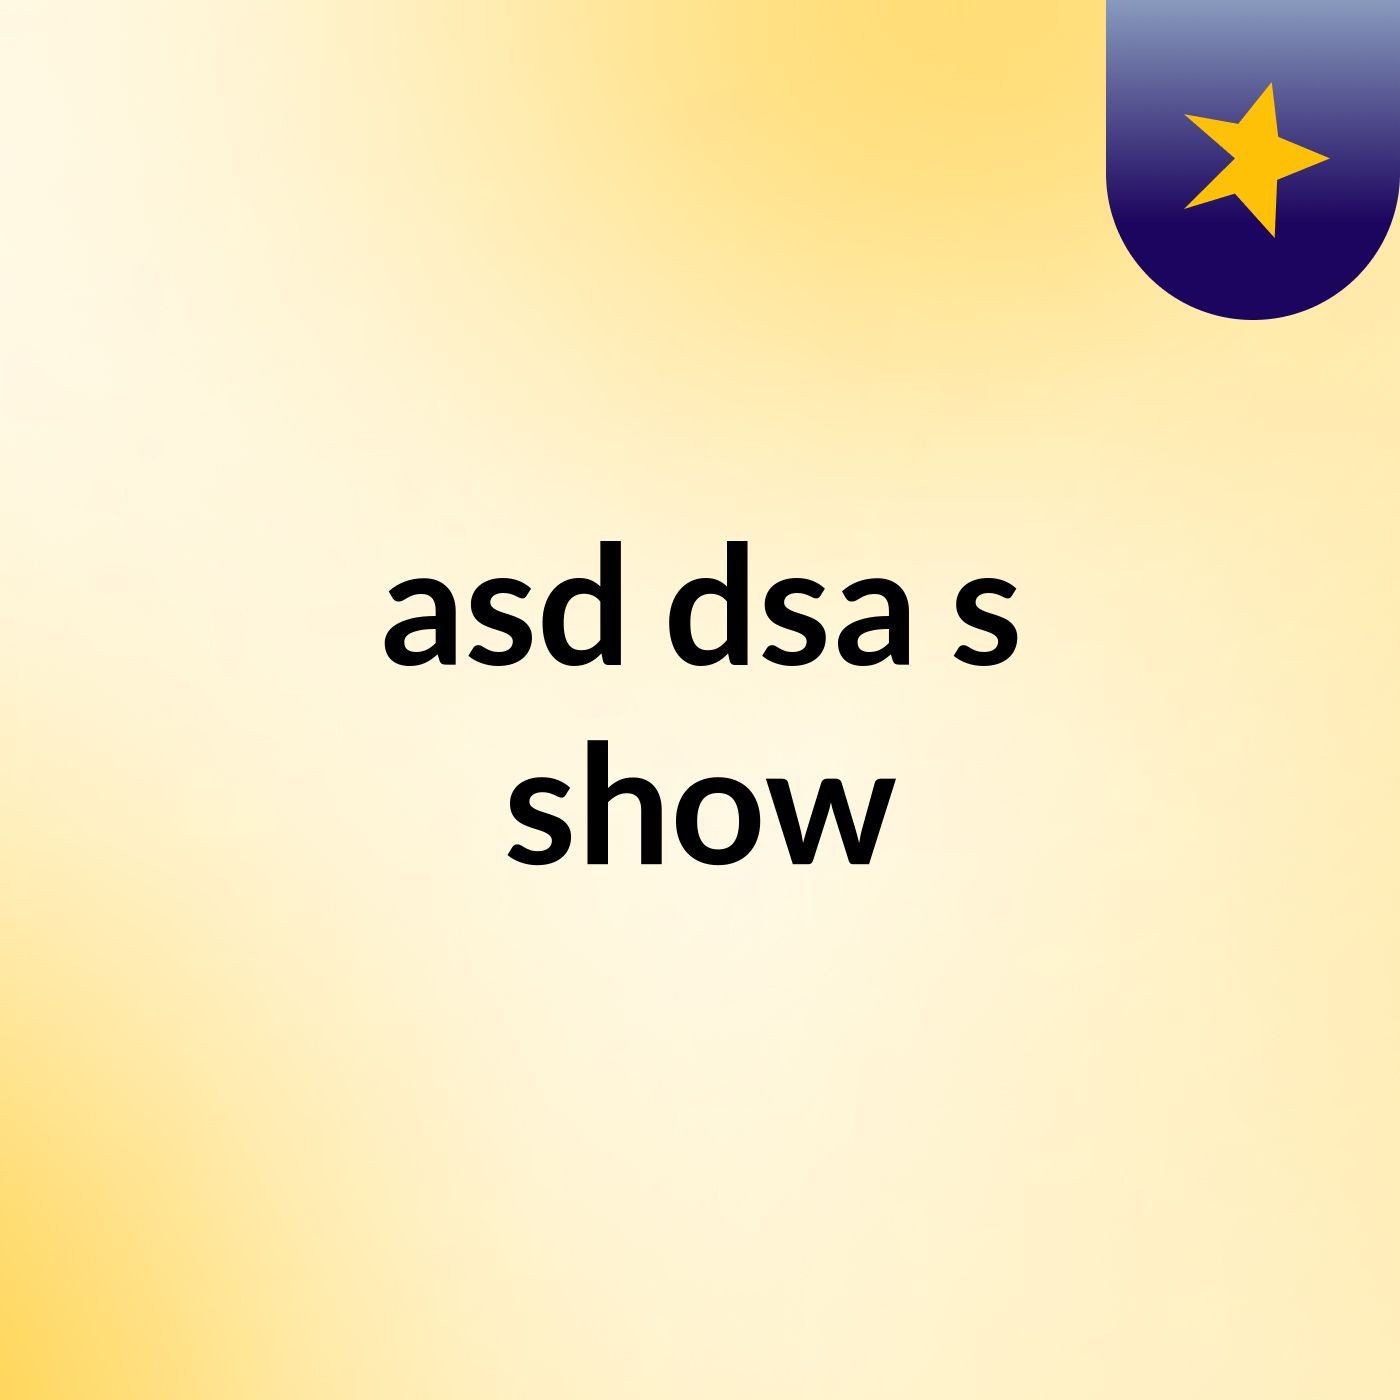 asd dsa's show